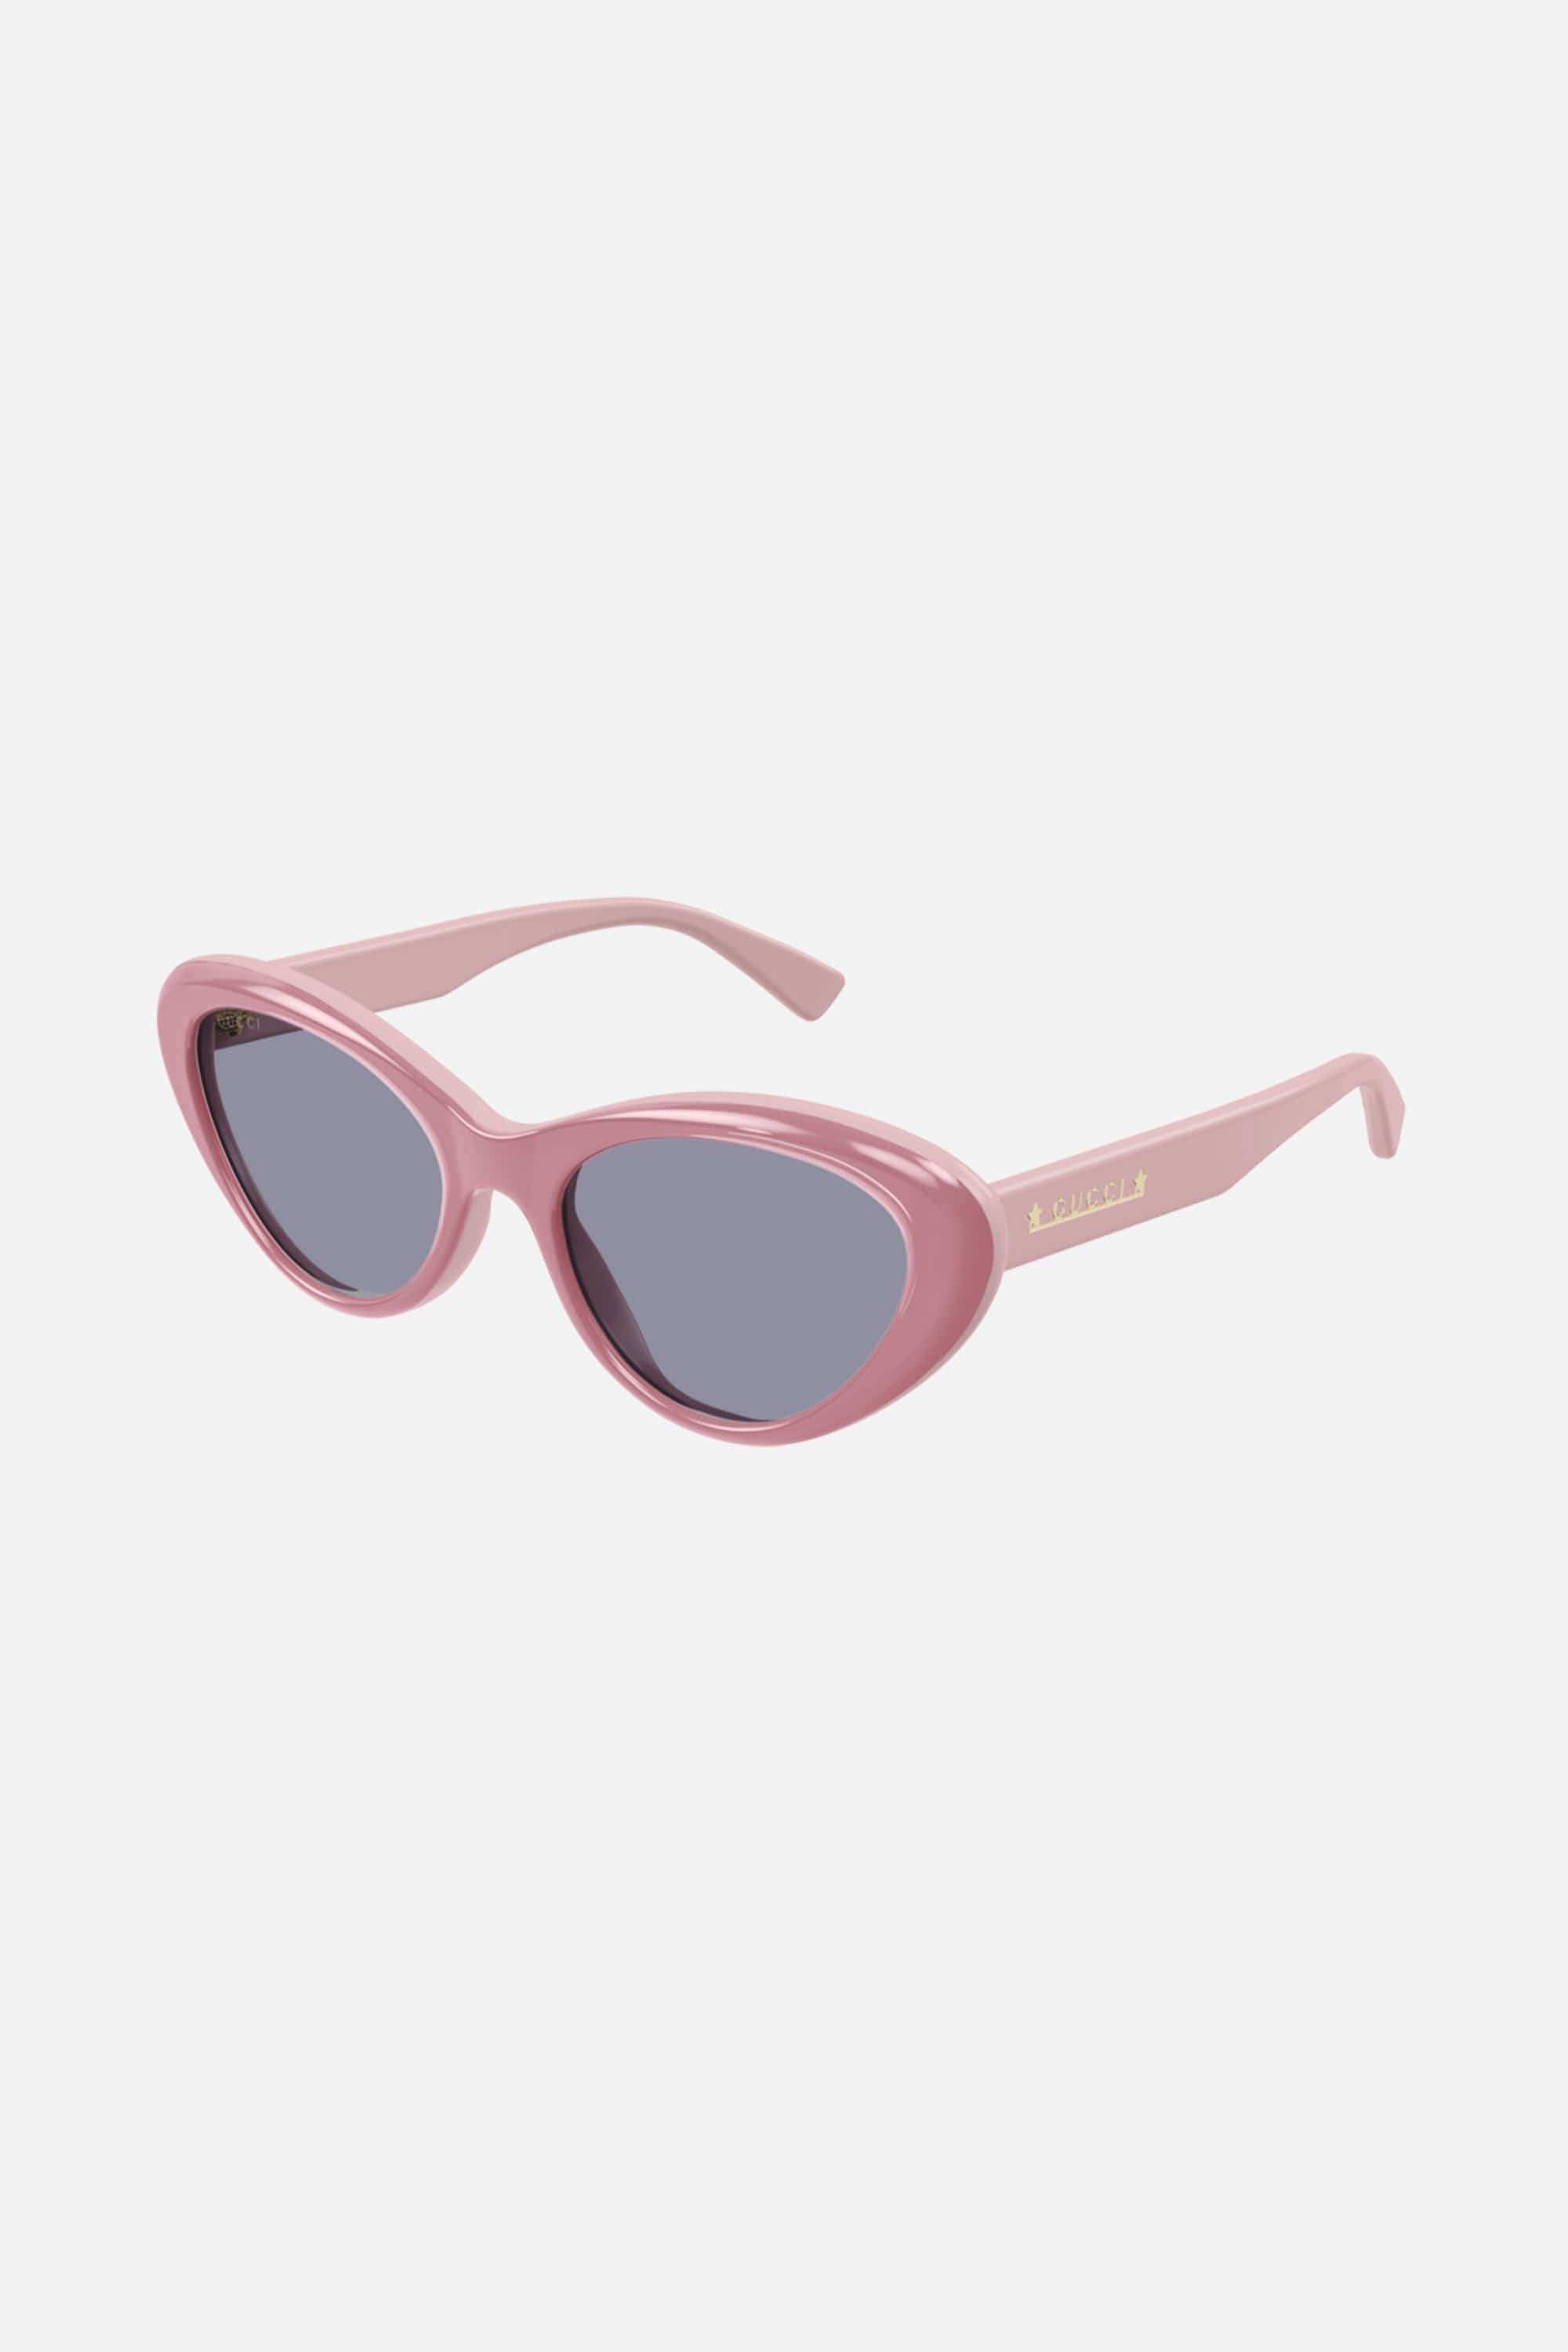 Gucci cat eye pink sunglasses - Eyewear Club